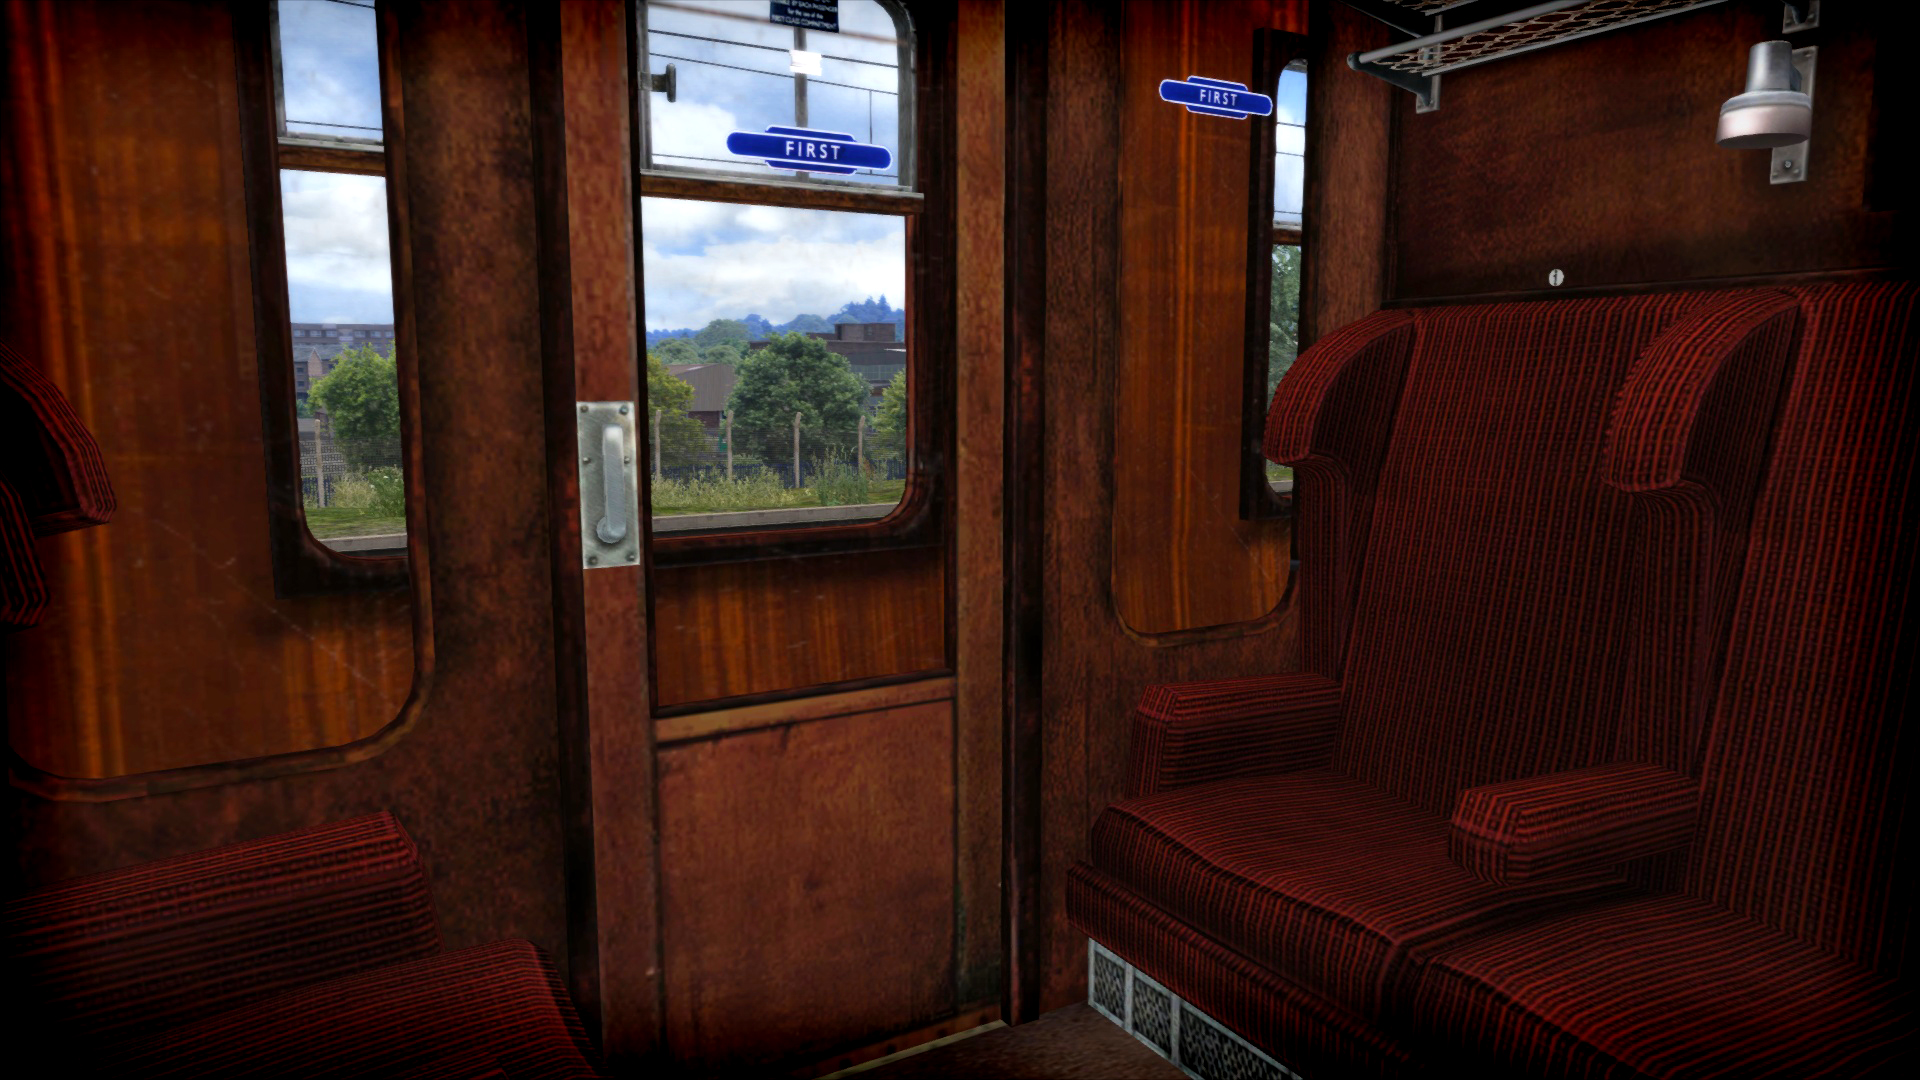 Train Simulator: LNER Peppercorn Class A2 'Blue Peter' Loco Add-On screenshot